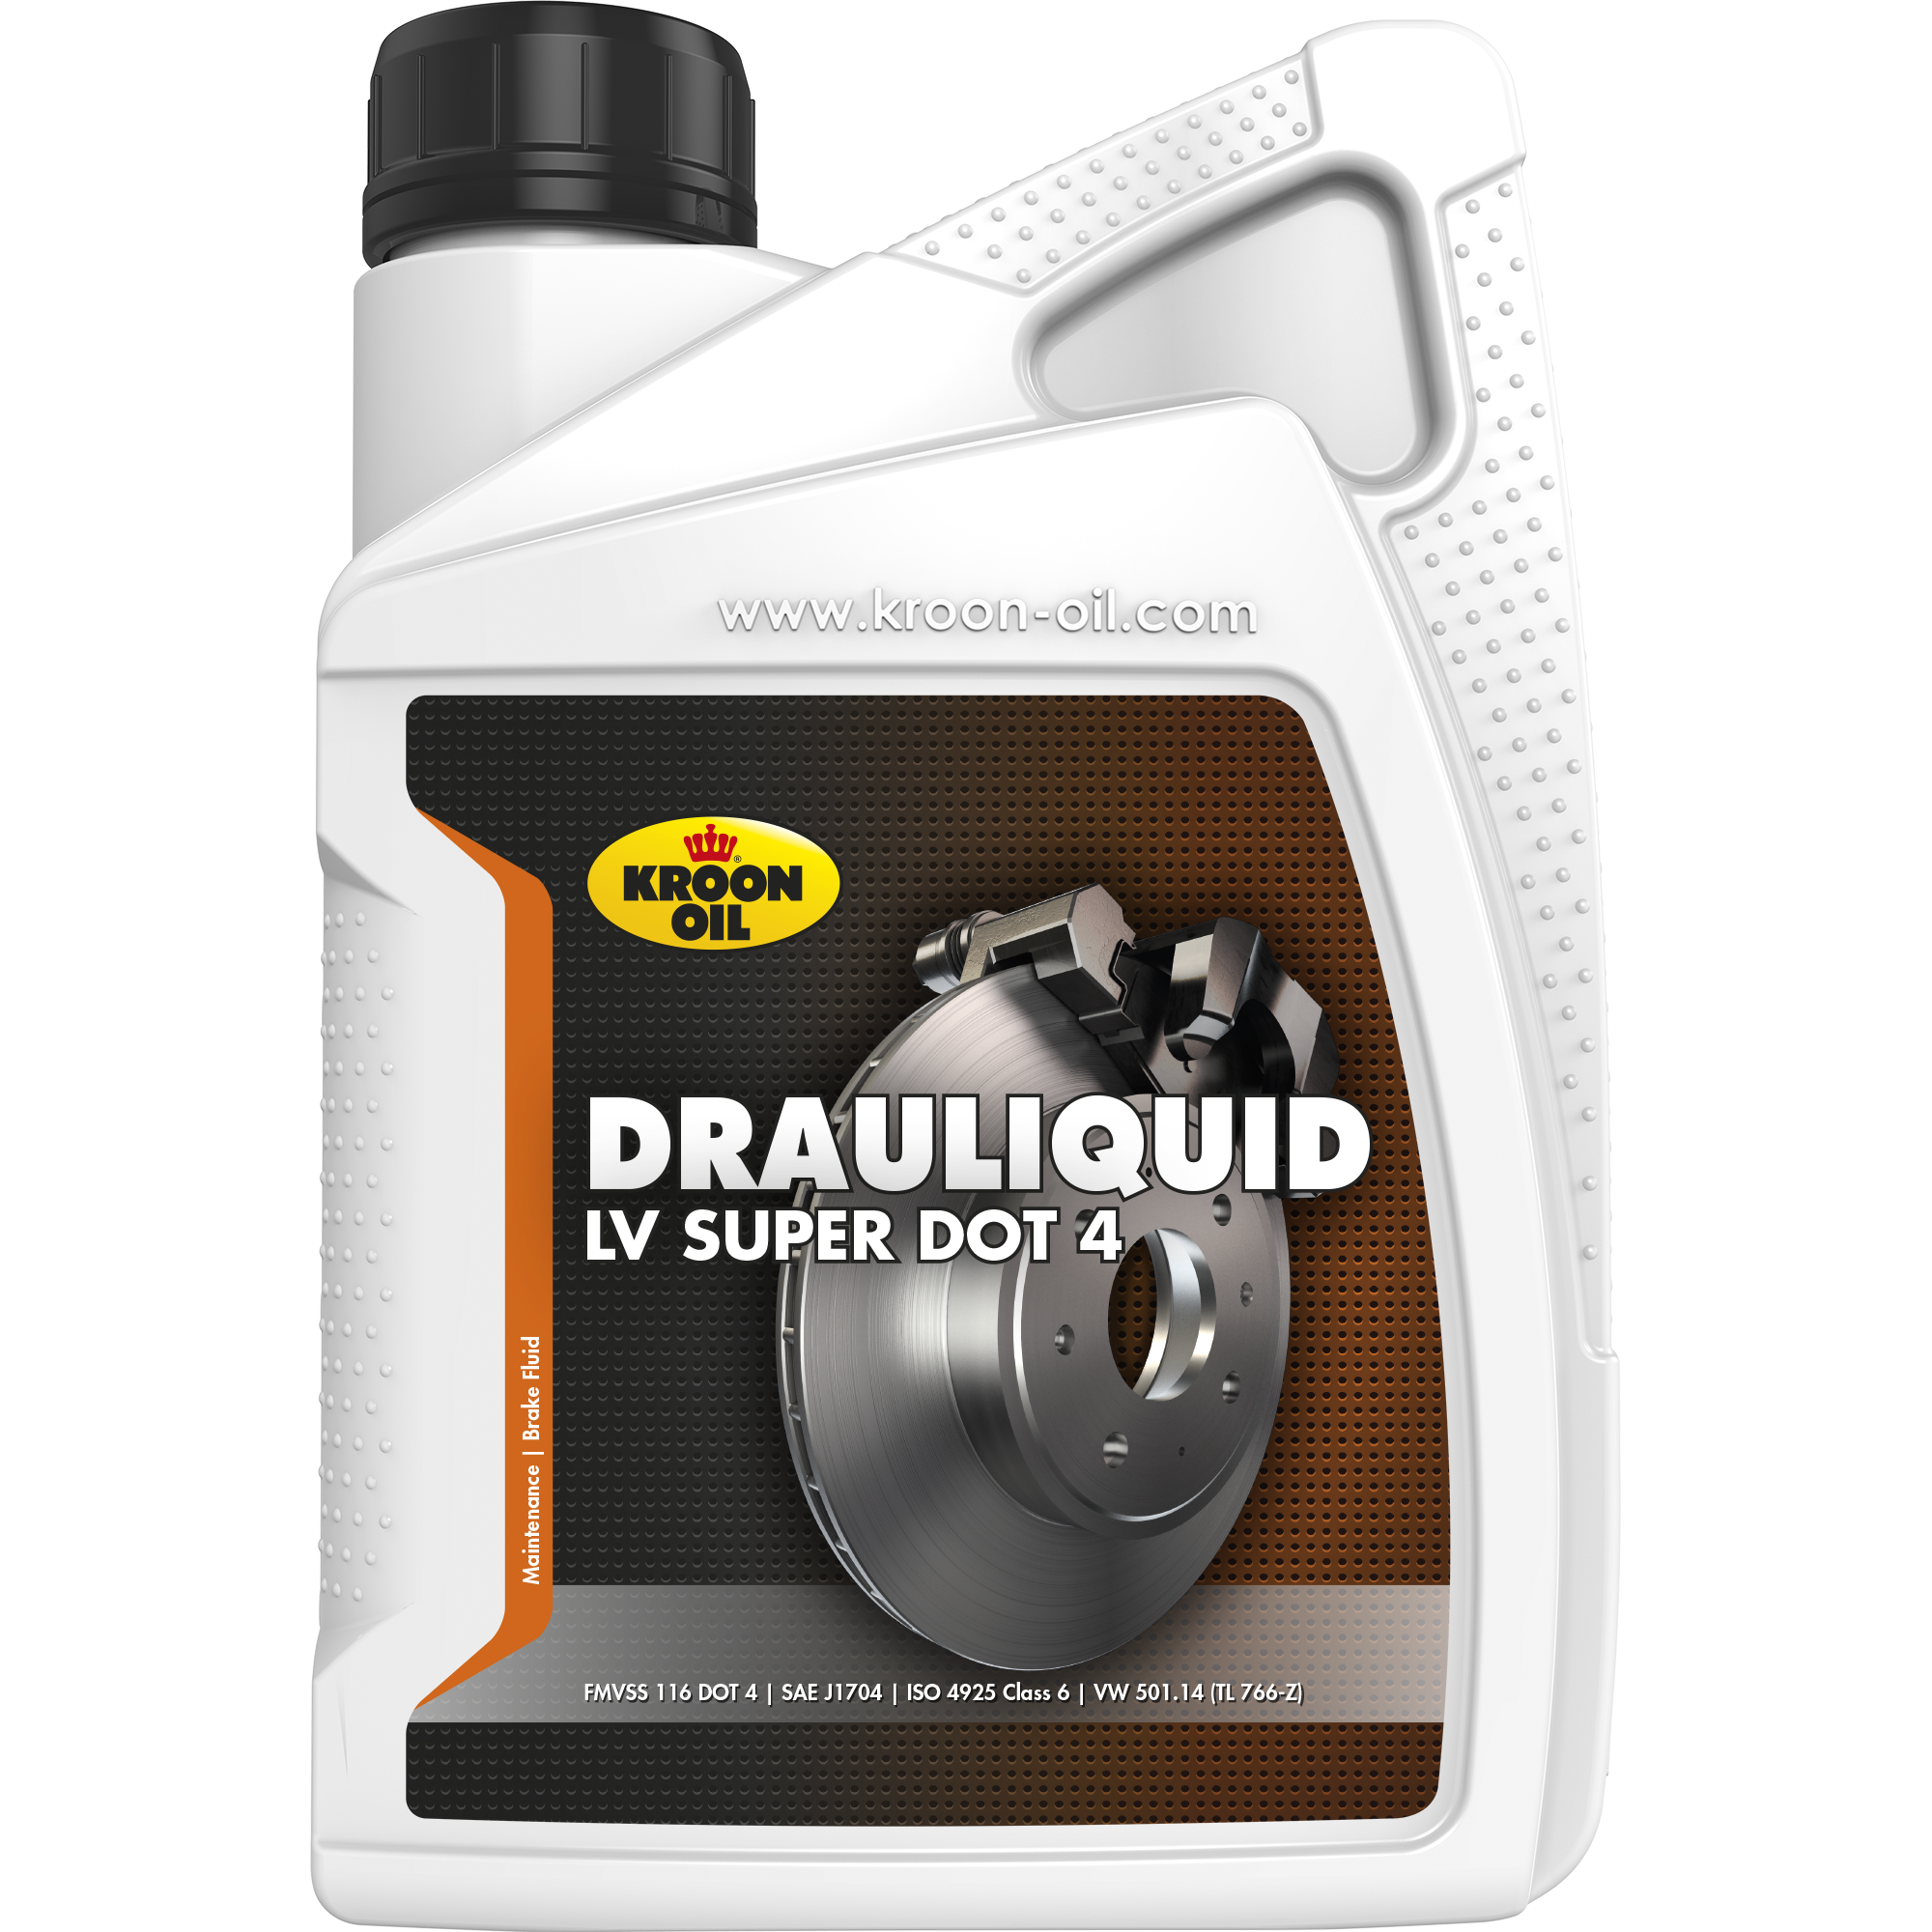 Kroon-Oil Drauliquid-LV Super DOT 4, 12 x 1 lt detail 2